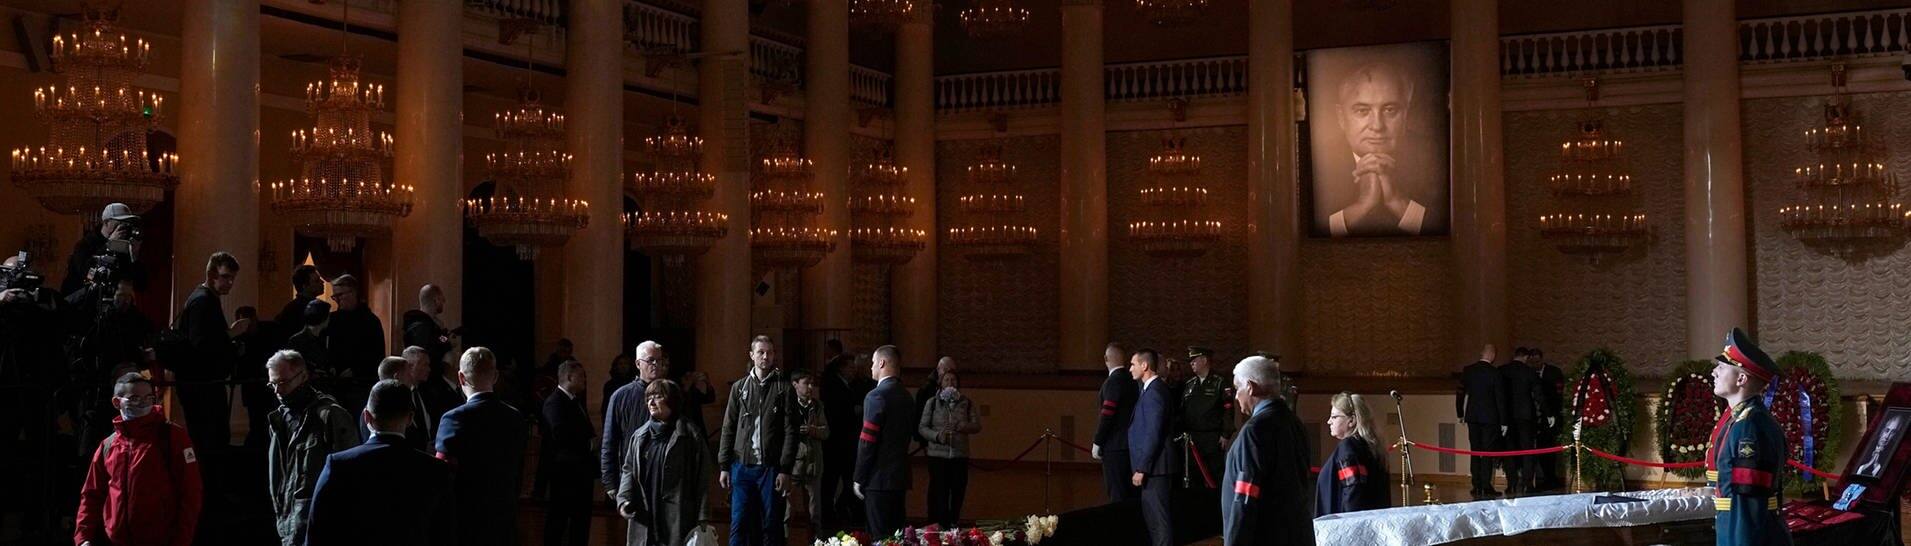 Menschen nehmen Abschied am offenen Sarg des ehemaligen sowjetischen Präsidenten Michail Gorbatschow in der Säulenhalle des Hauses der Gewerkschaften.